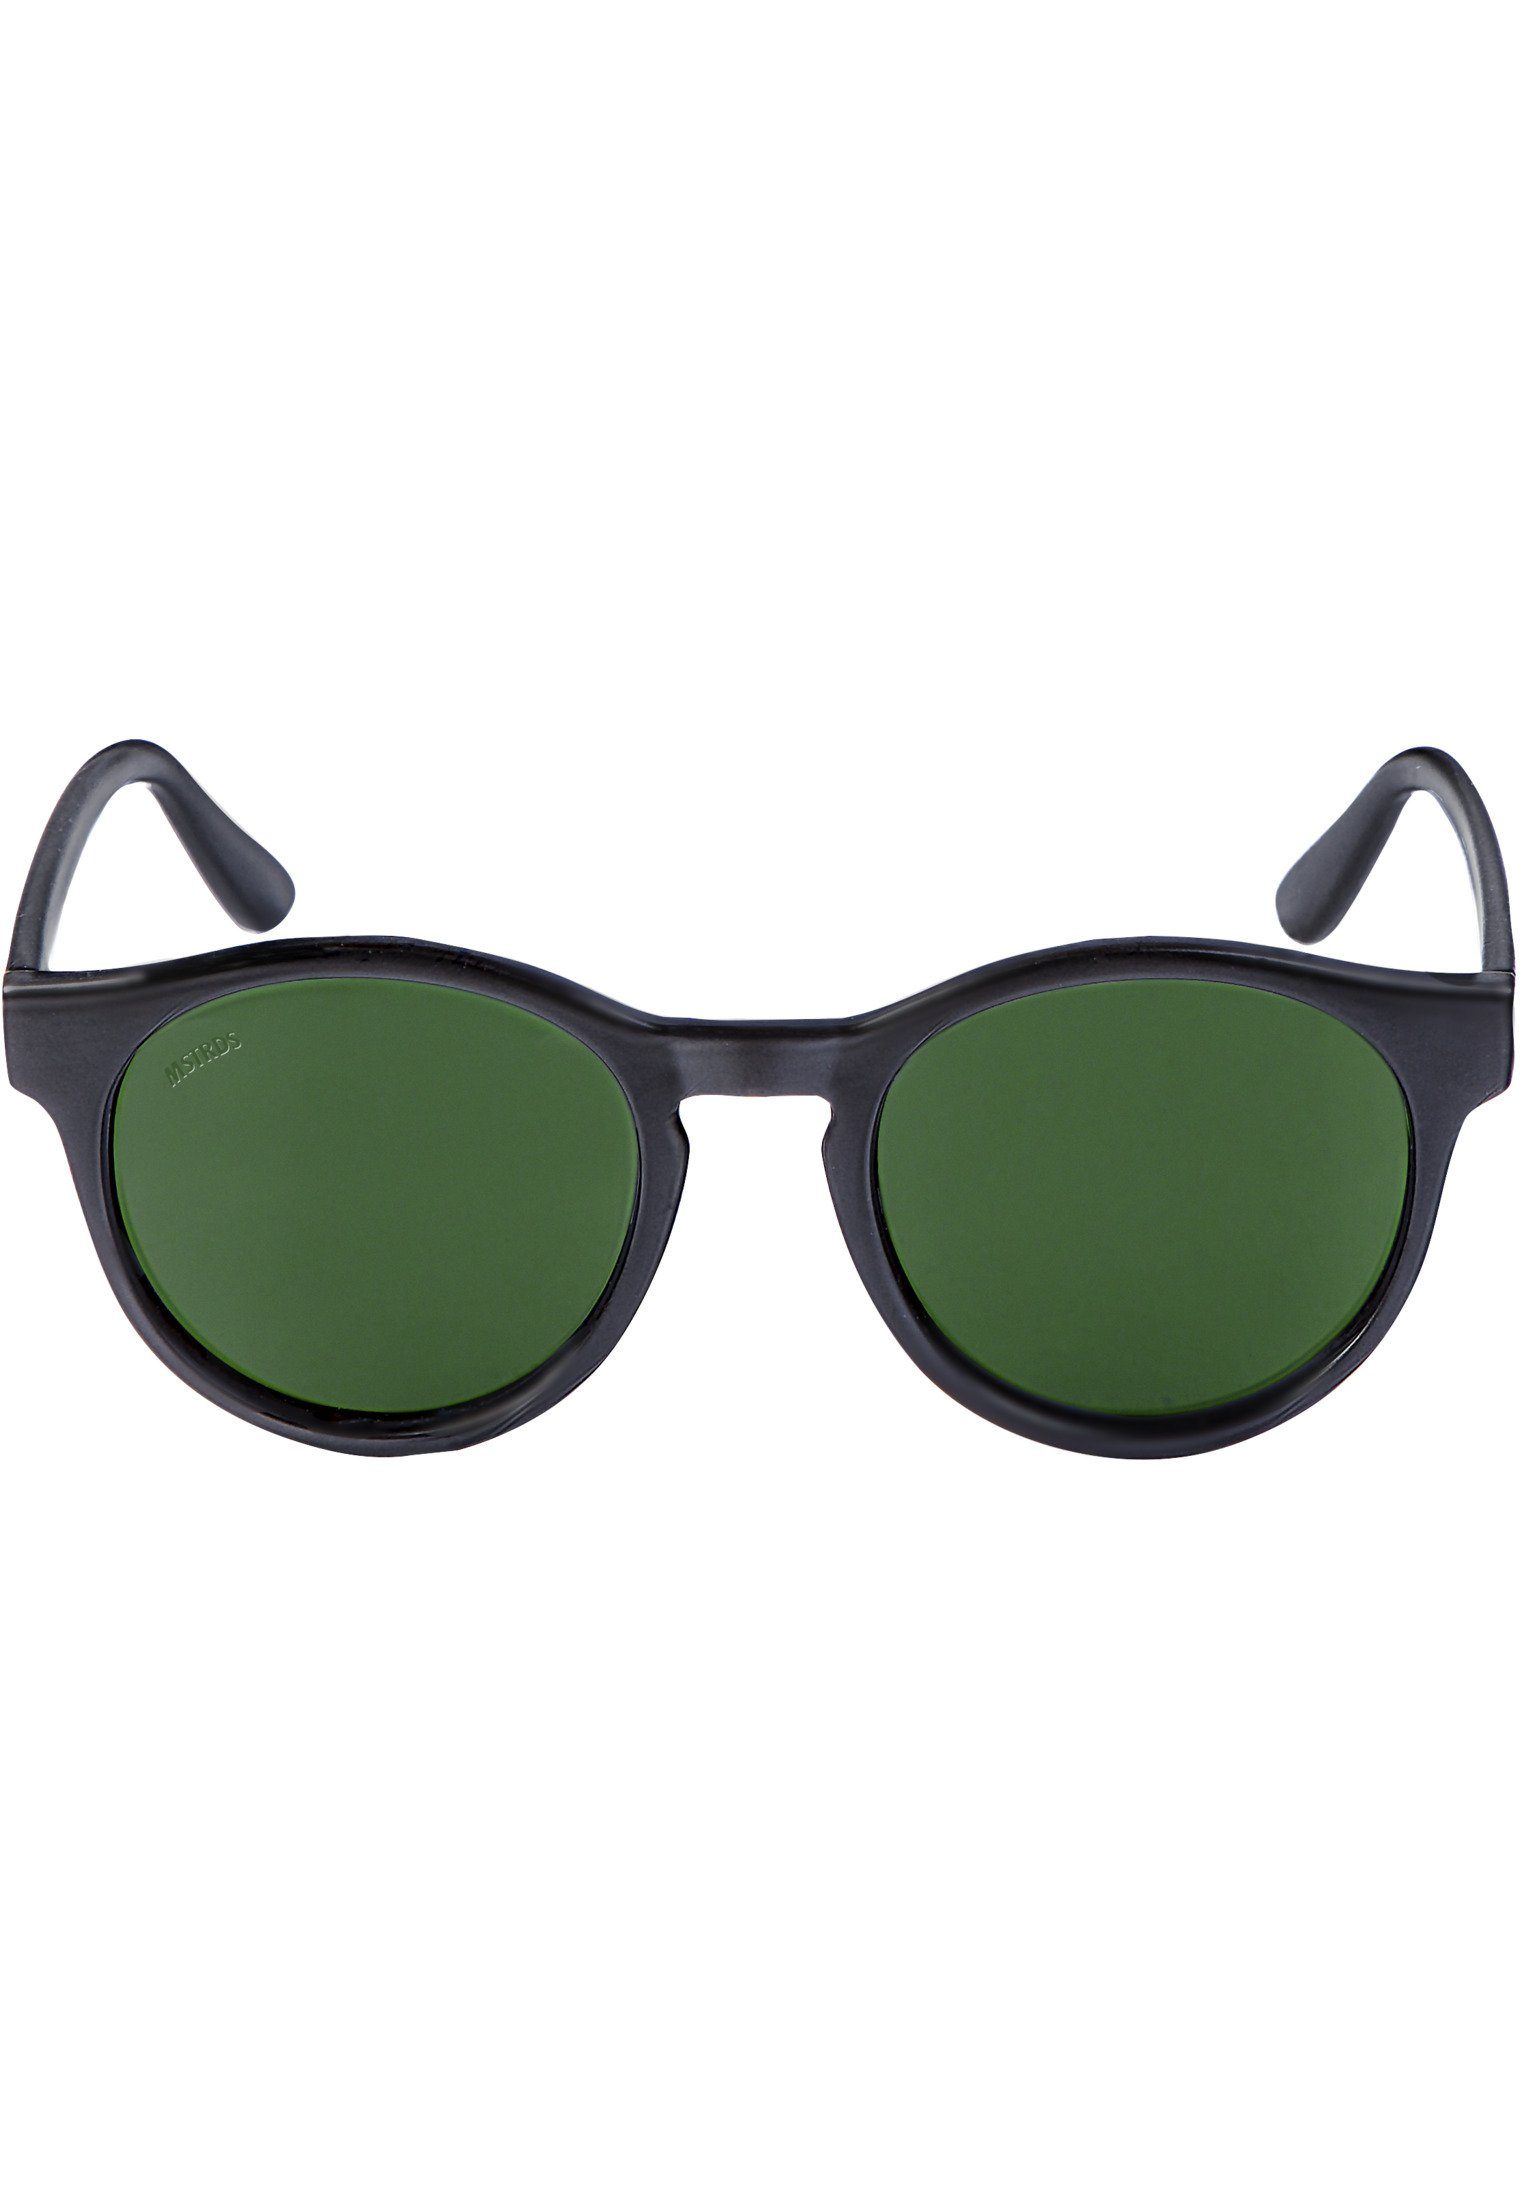 Sunrise Sunglasses blk/grn MSTRDS Sonnenbrille Accessoires